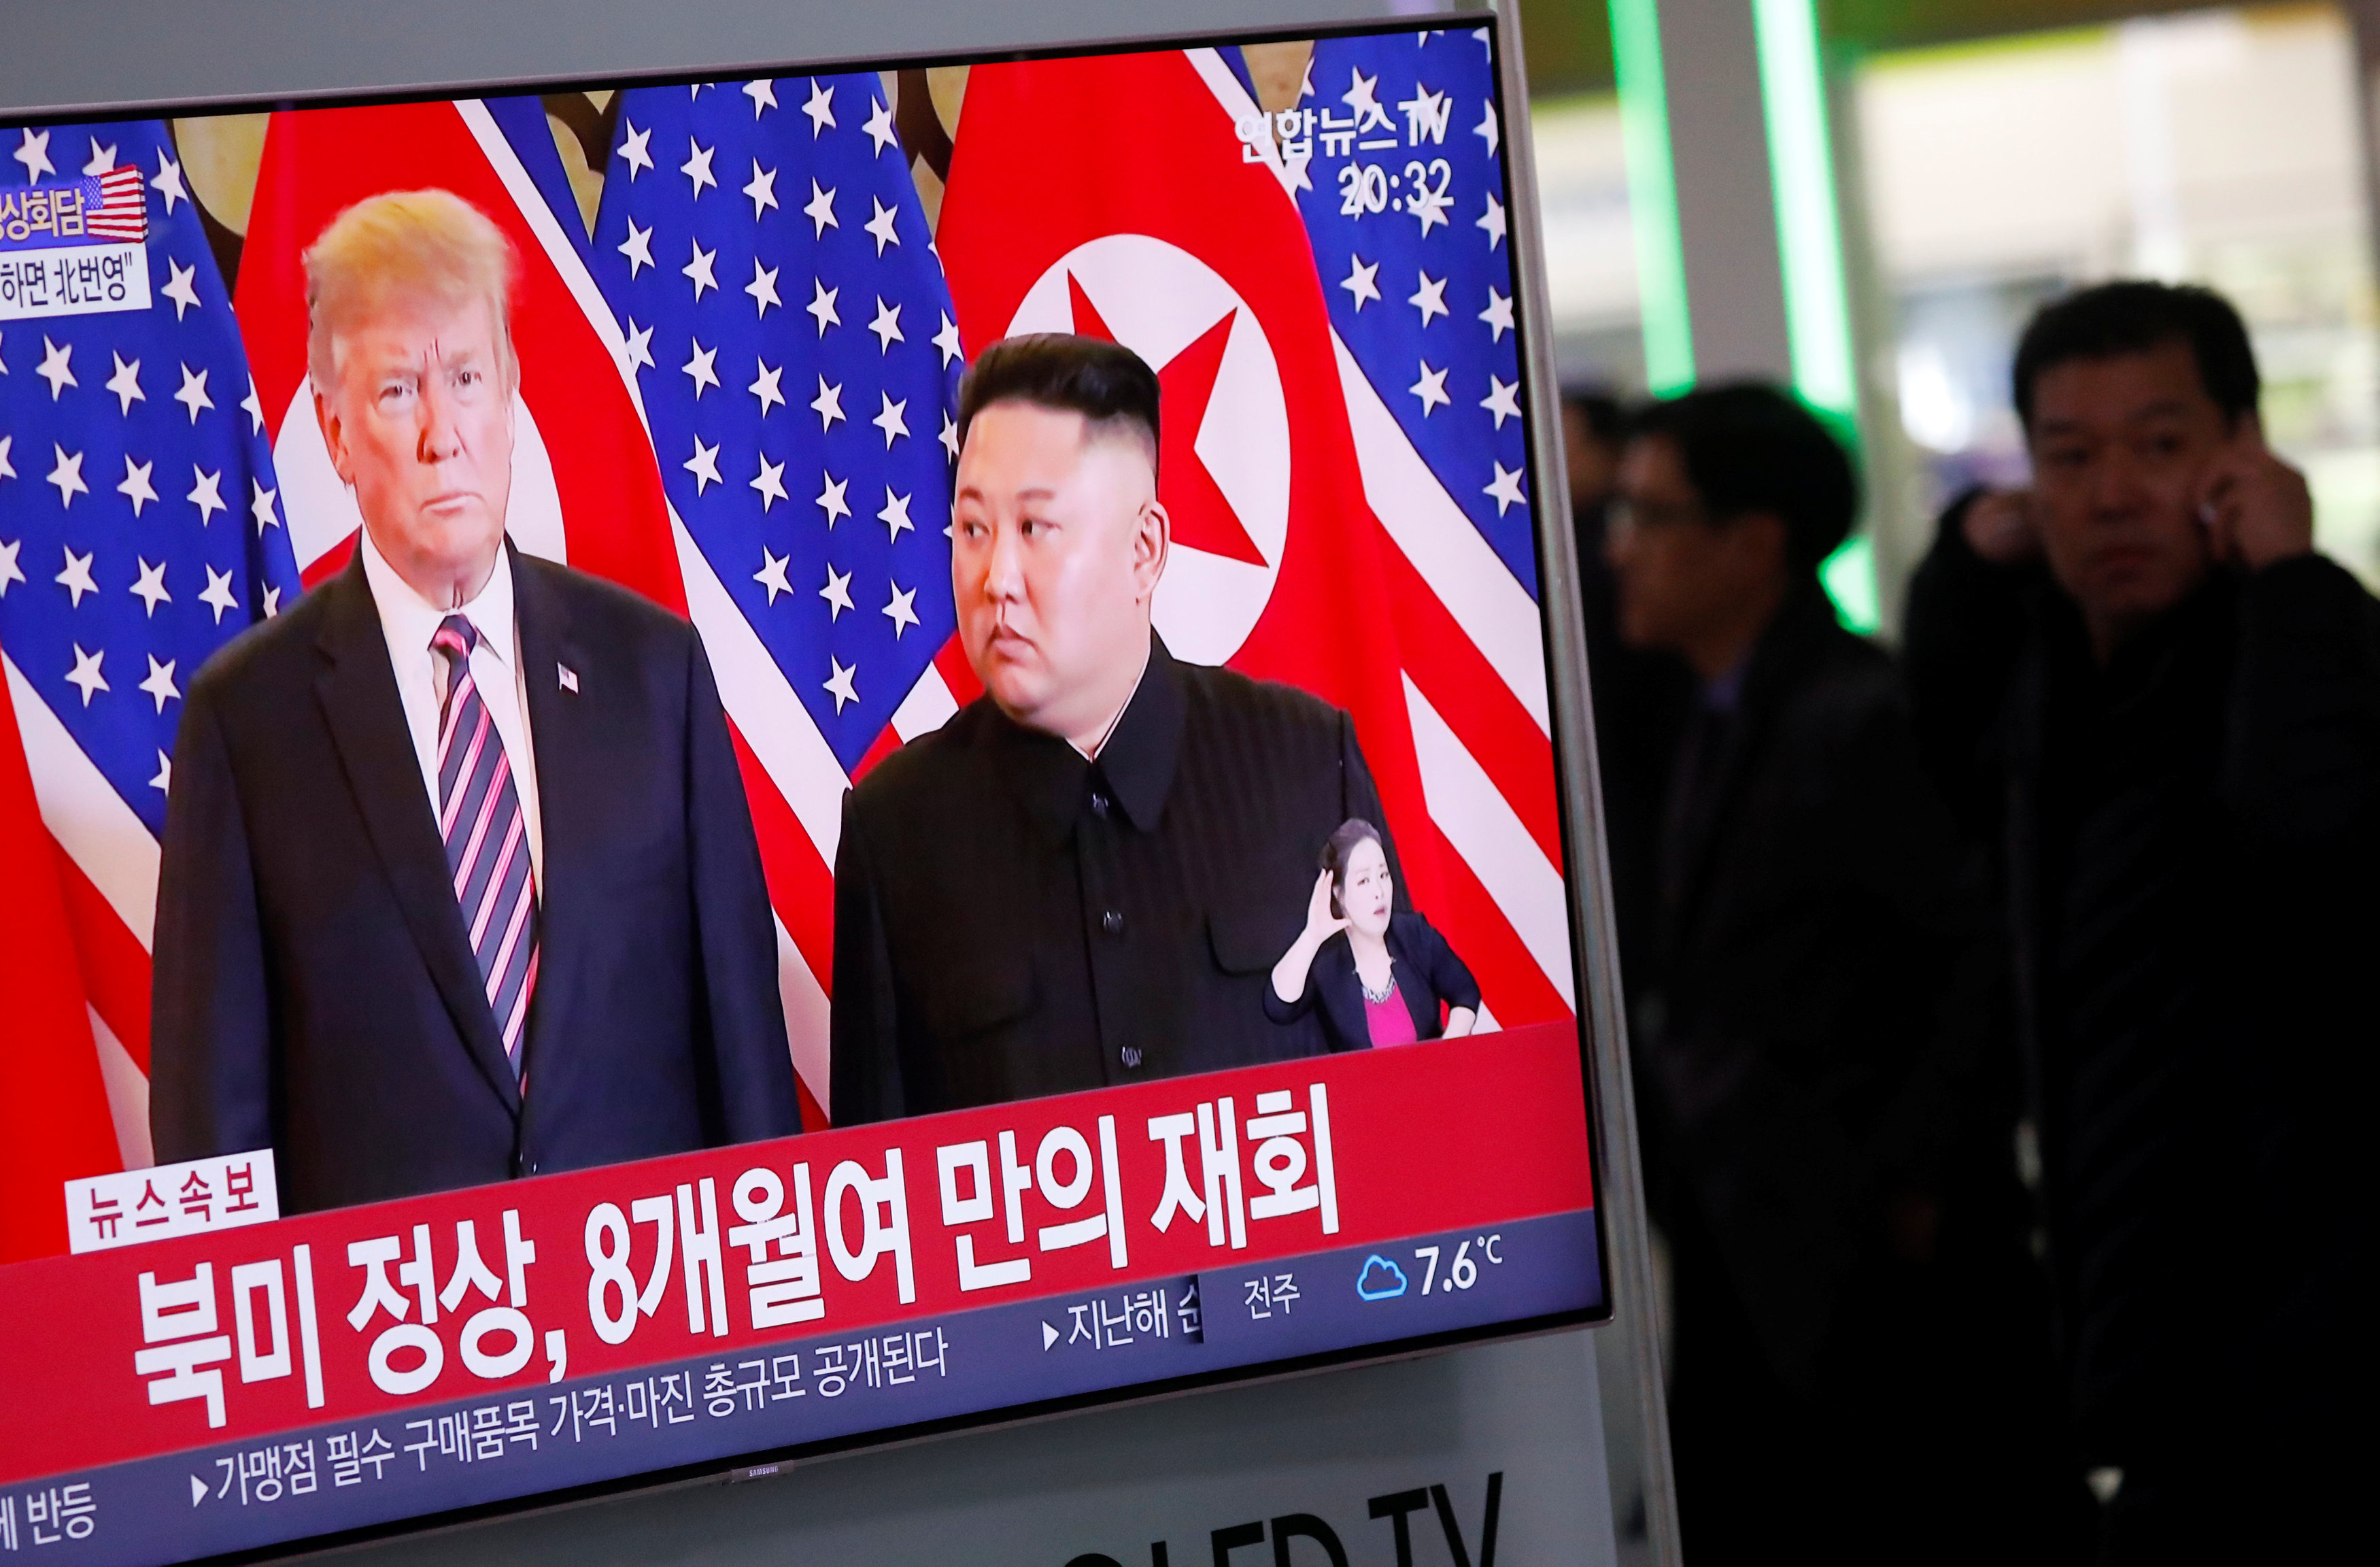 Trump viajará a Corea del Sur a finales de junio